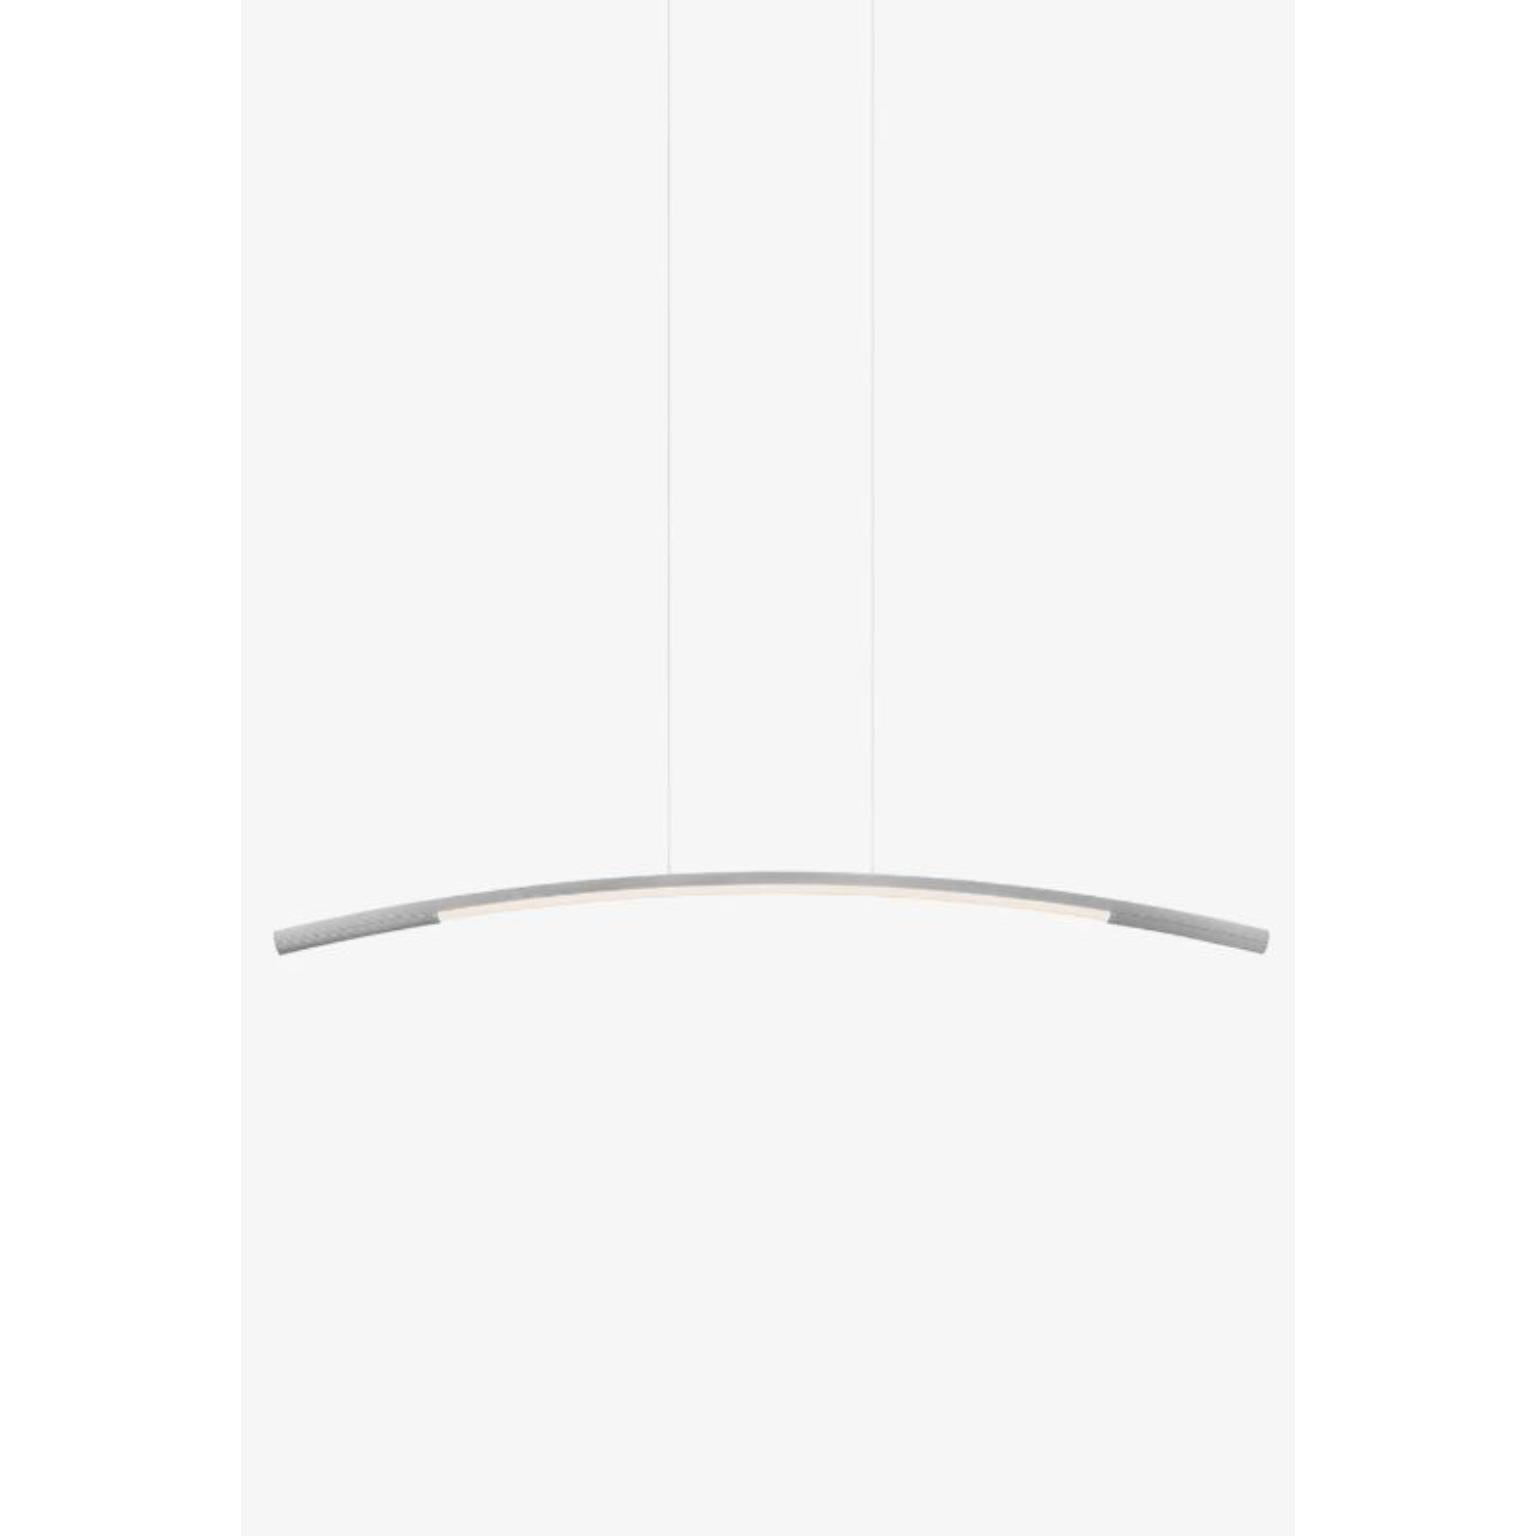 Grande lampe suspendue Palo blanche de WhitingZ
Dimensions : D 5 x L 185 x H 16 cm
MATERIAL : Aluminium, acrylique.


Poids : 4kg / 8,8 lbs
Couleurs : Noir, aluminium
SOURCE DE LUMIÈRE : LED intégrée. 14W. 1680lm. 2700K. IRC DE 90.
DIMMING